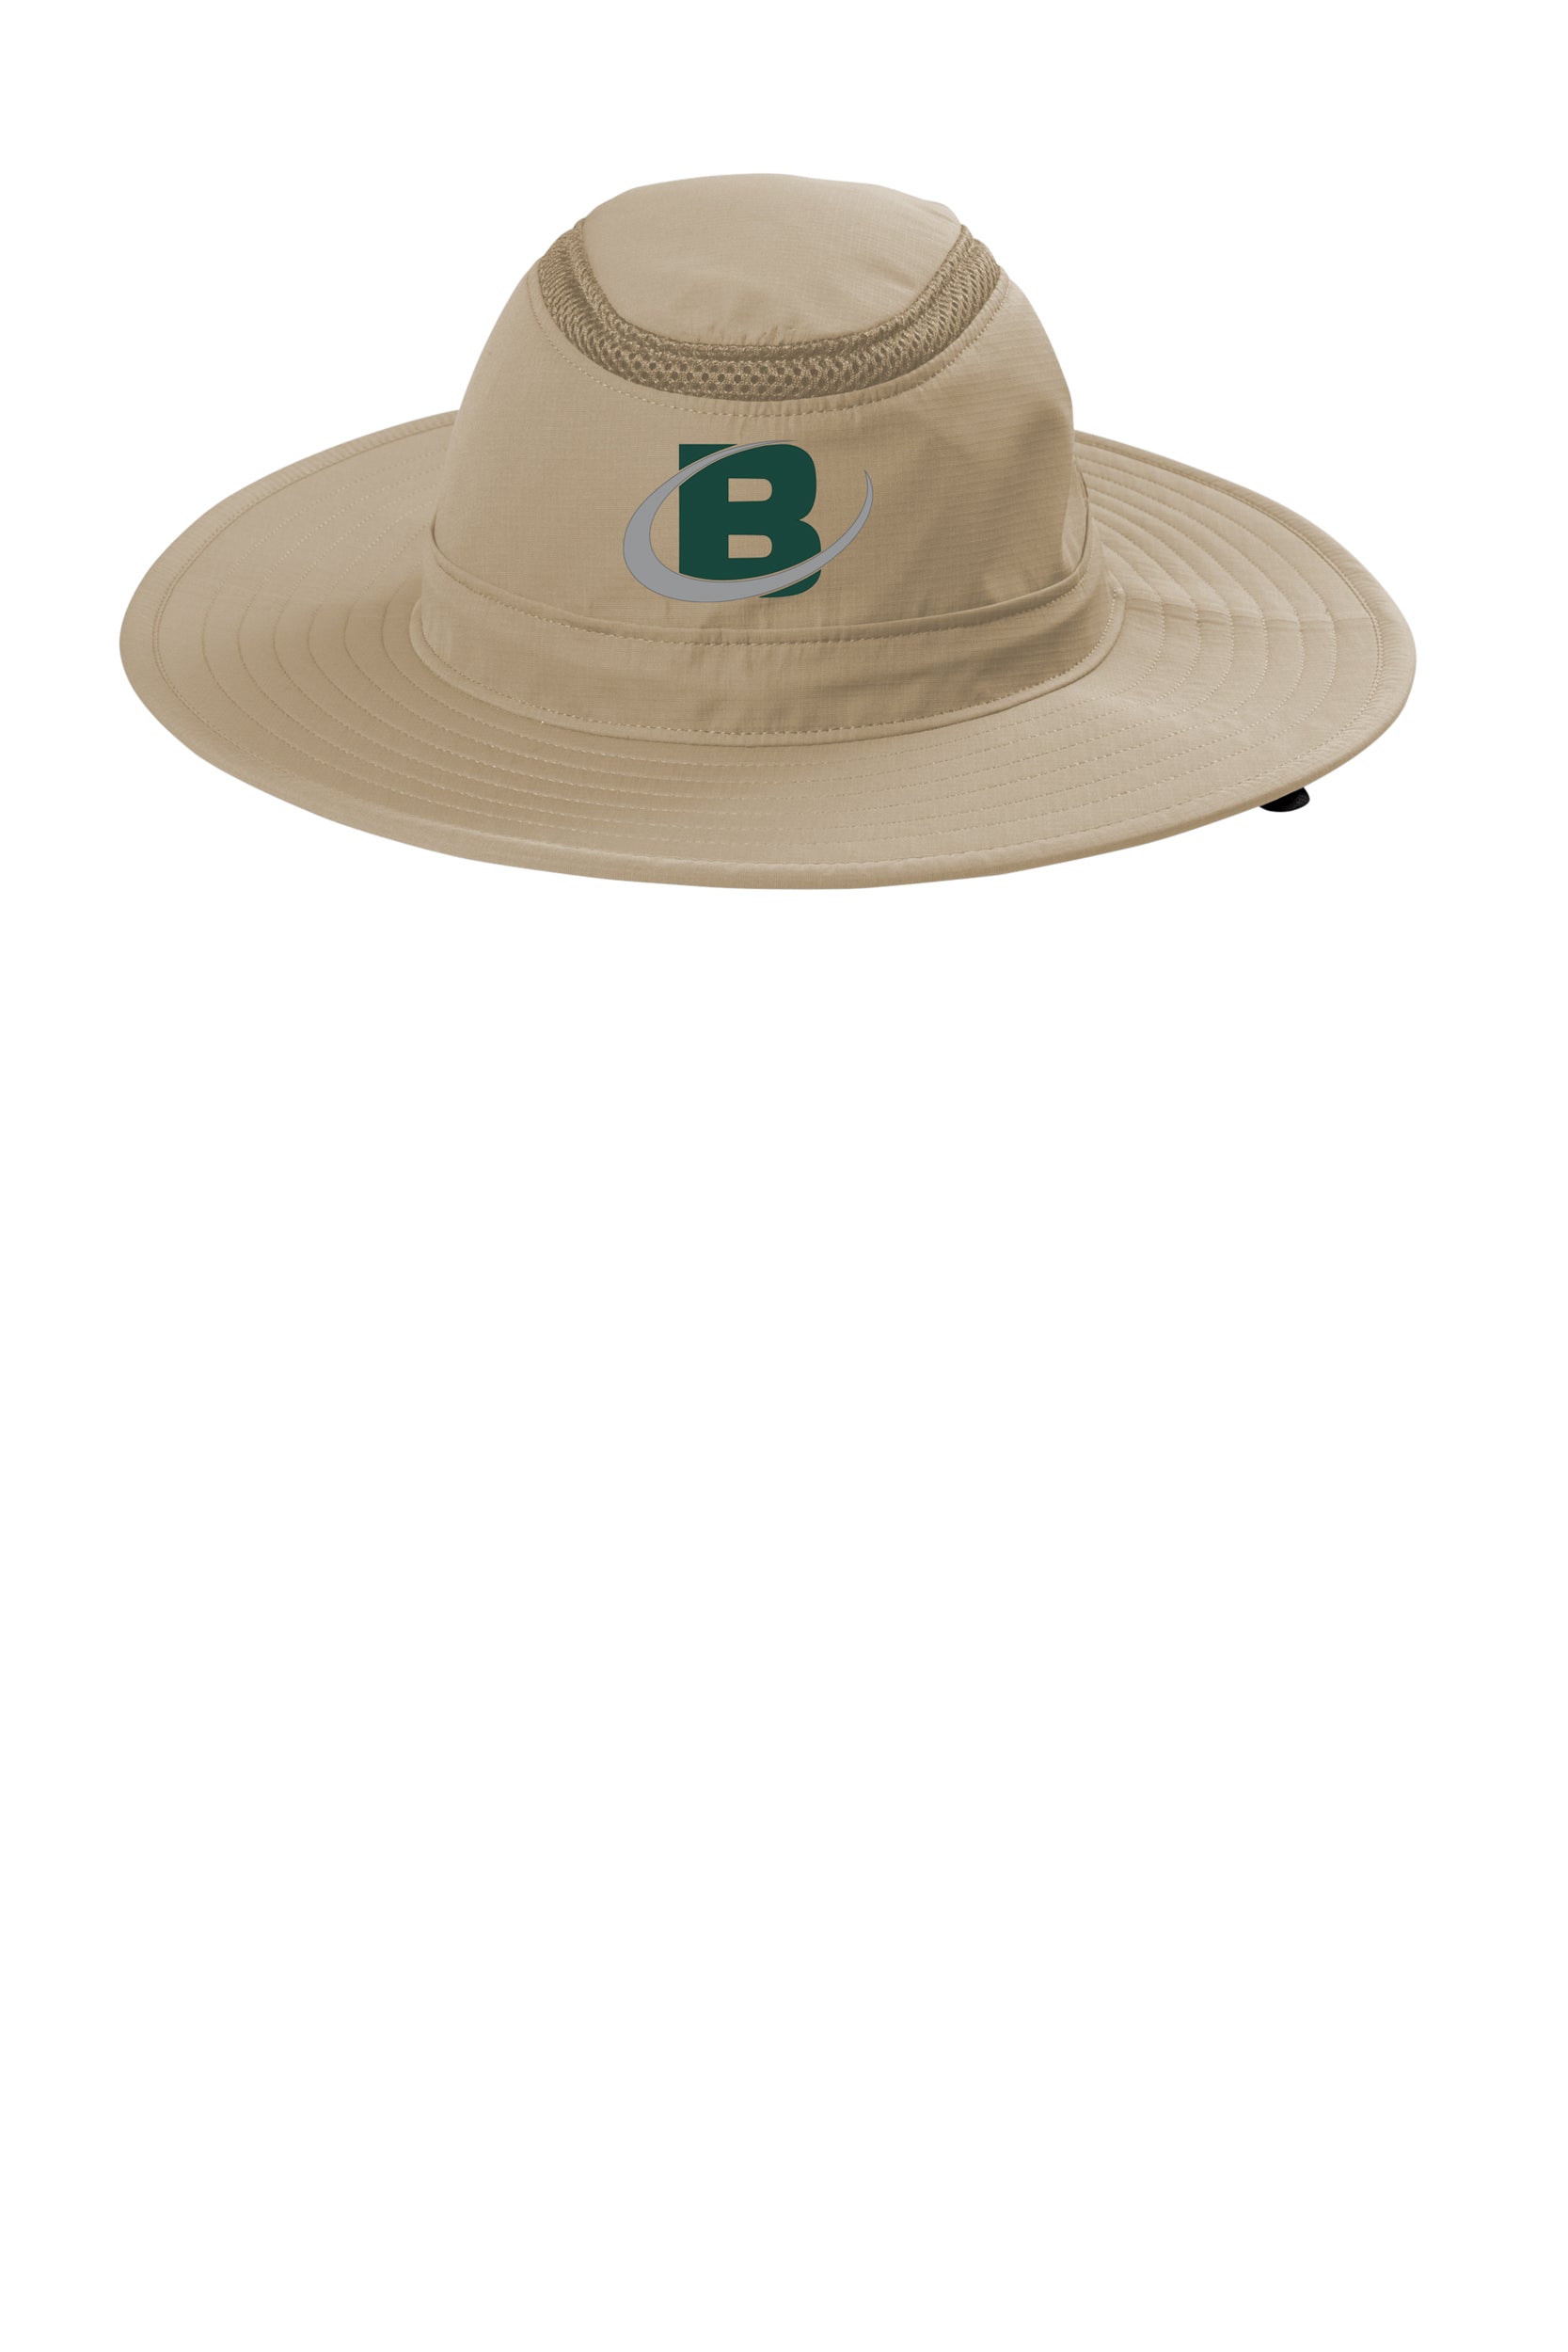 Bowman Turfgrass Professionals - Wide Brim Bucket Hat